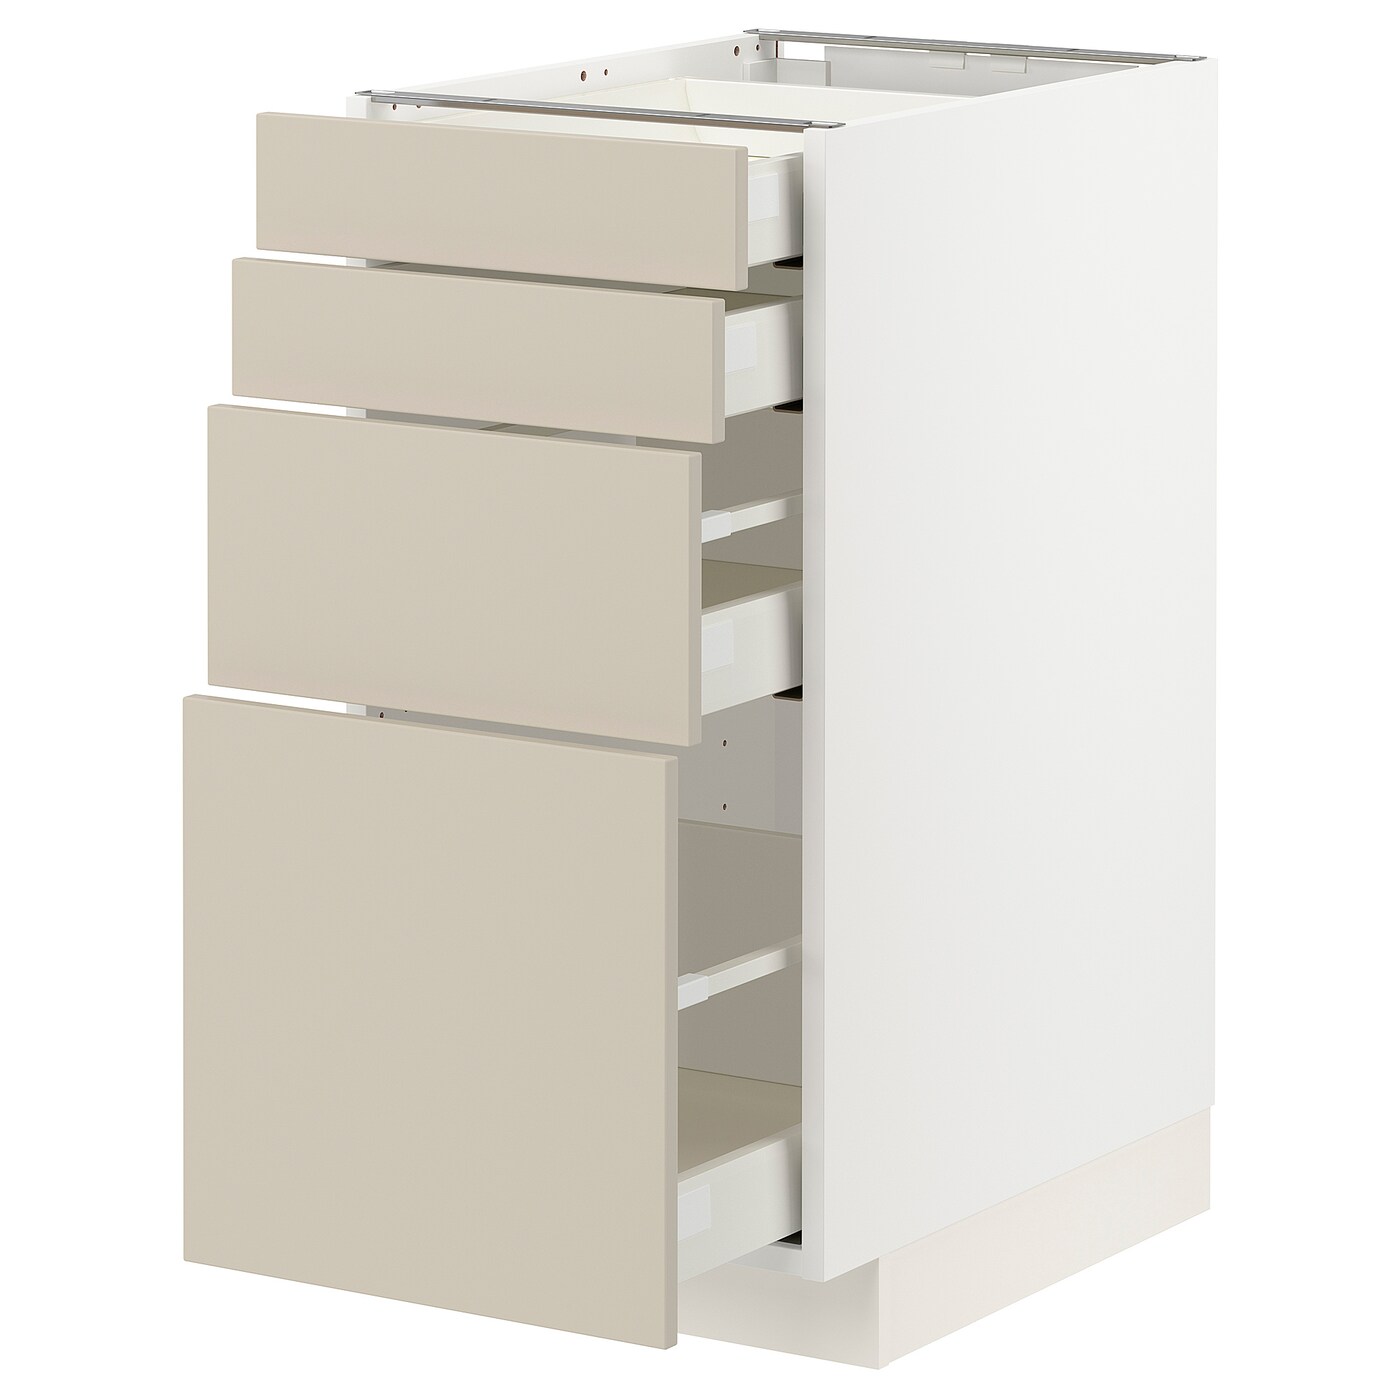 Напольный кухонный шкаф  - IKEA METOD MAXIMERA, 88x61,6x40см, белый/бежевый, МЕТОД МАКСИМЕРА ИКЕА